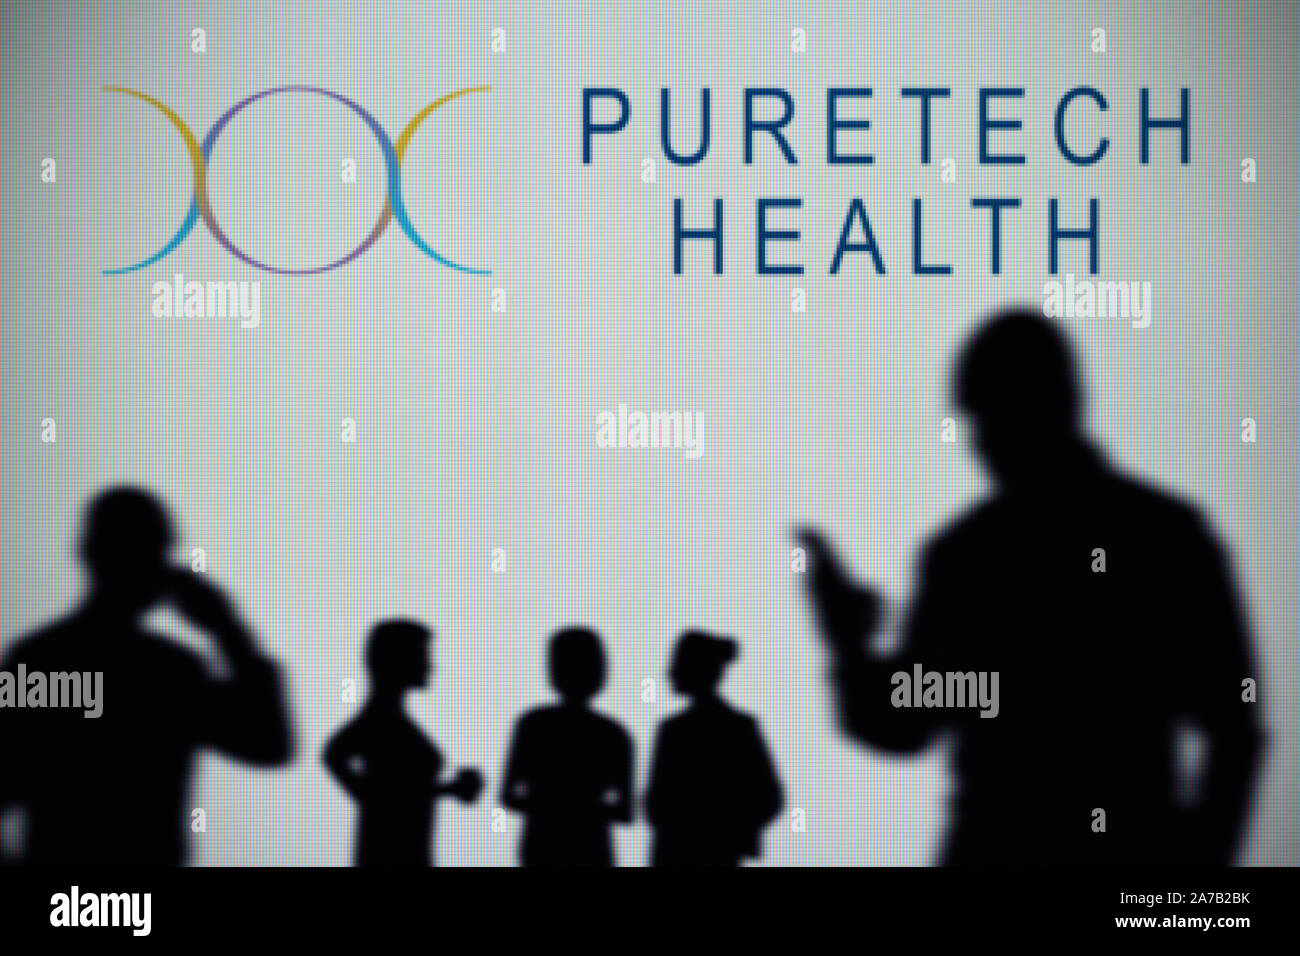 La santé Puretech logo est visible sur un écran LED à l'arrière-plan tandis qu'une silhouette personne utilise un smartphone (usage éditorial uniquement) Banque D'Images